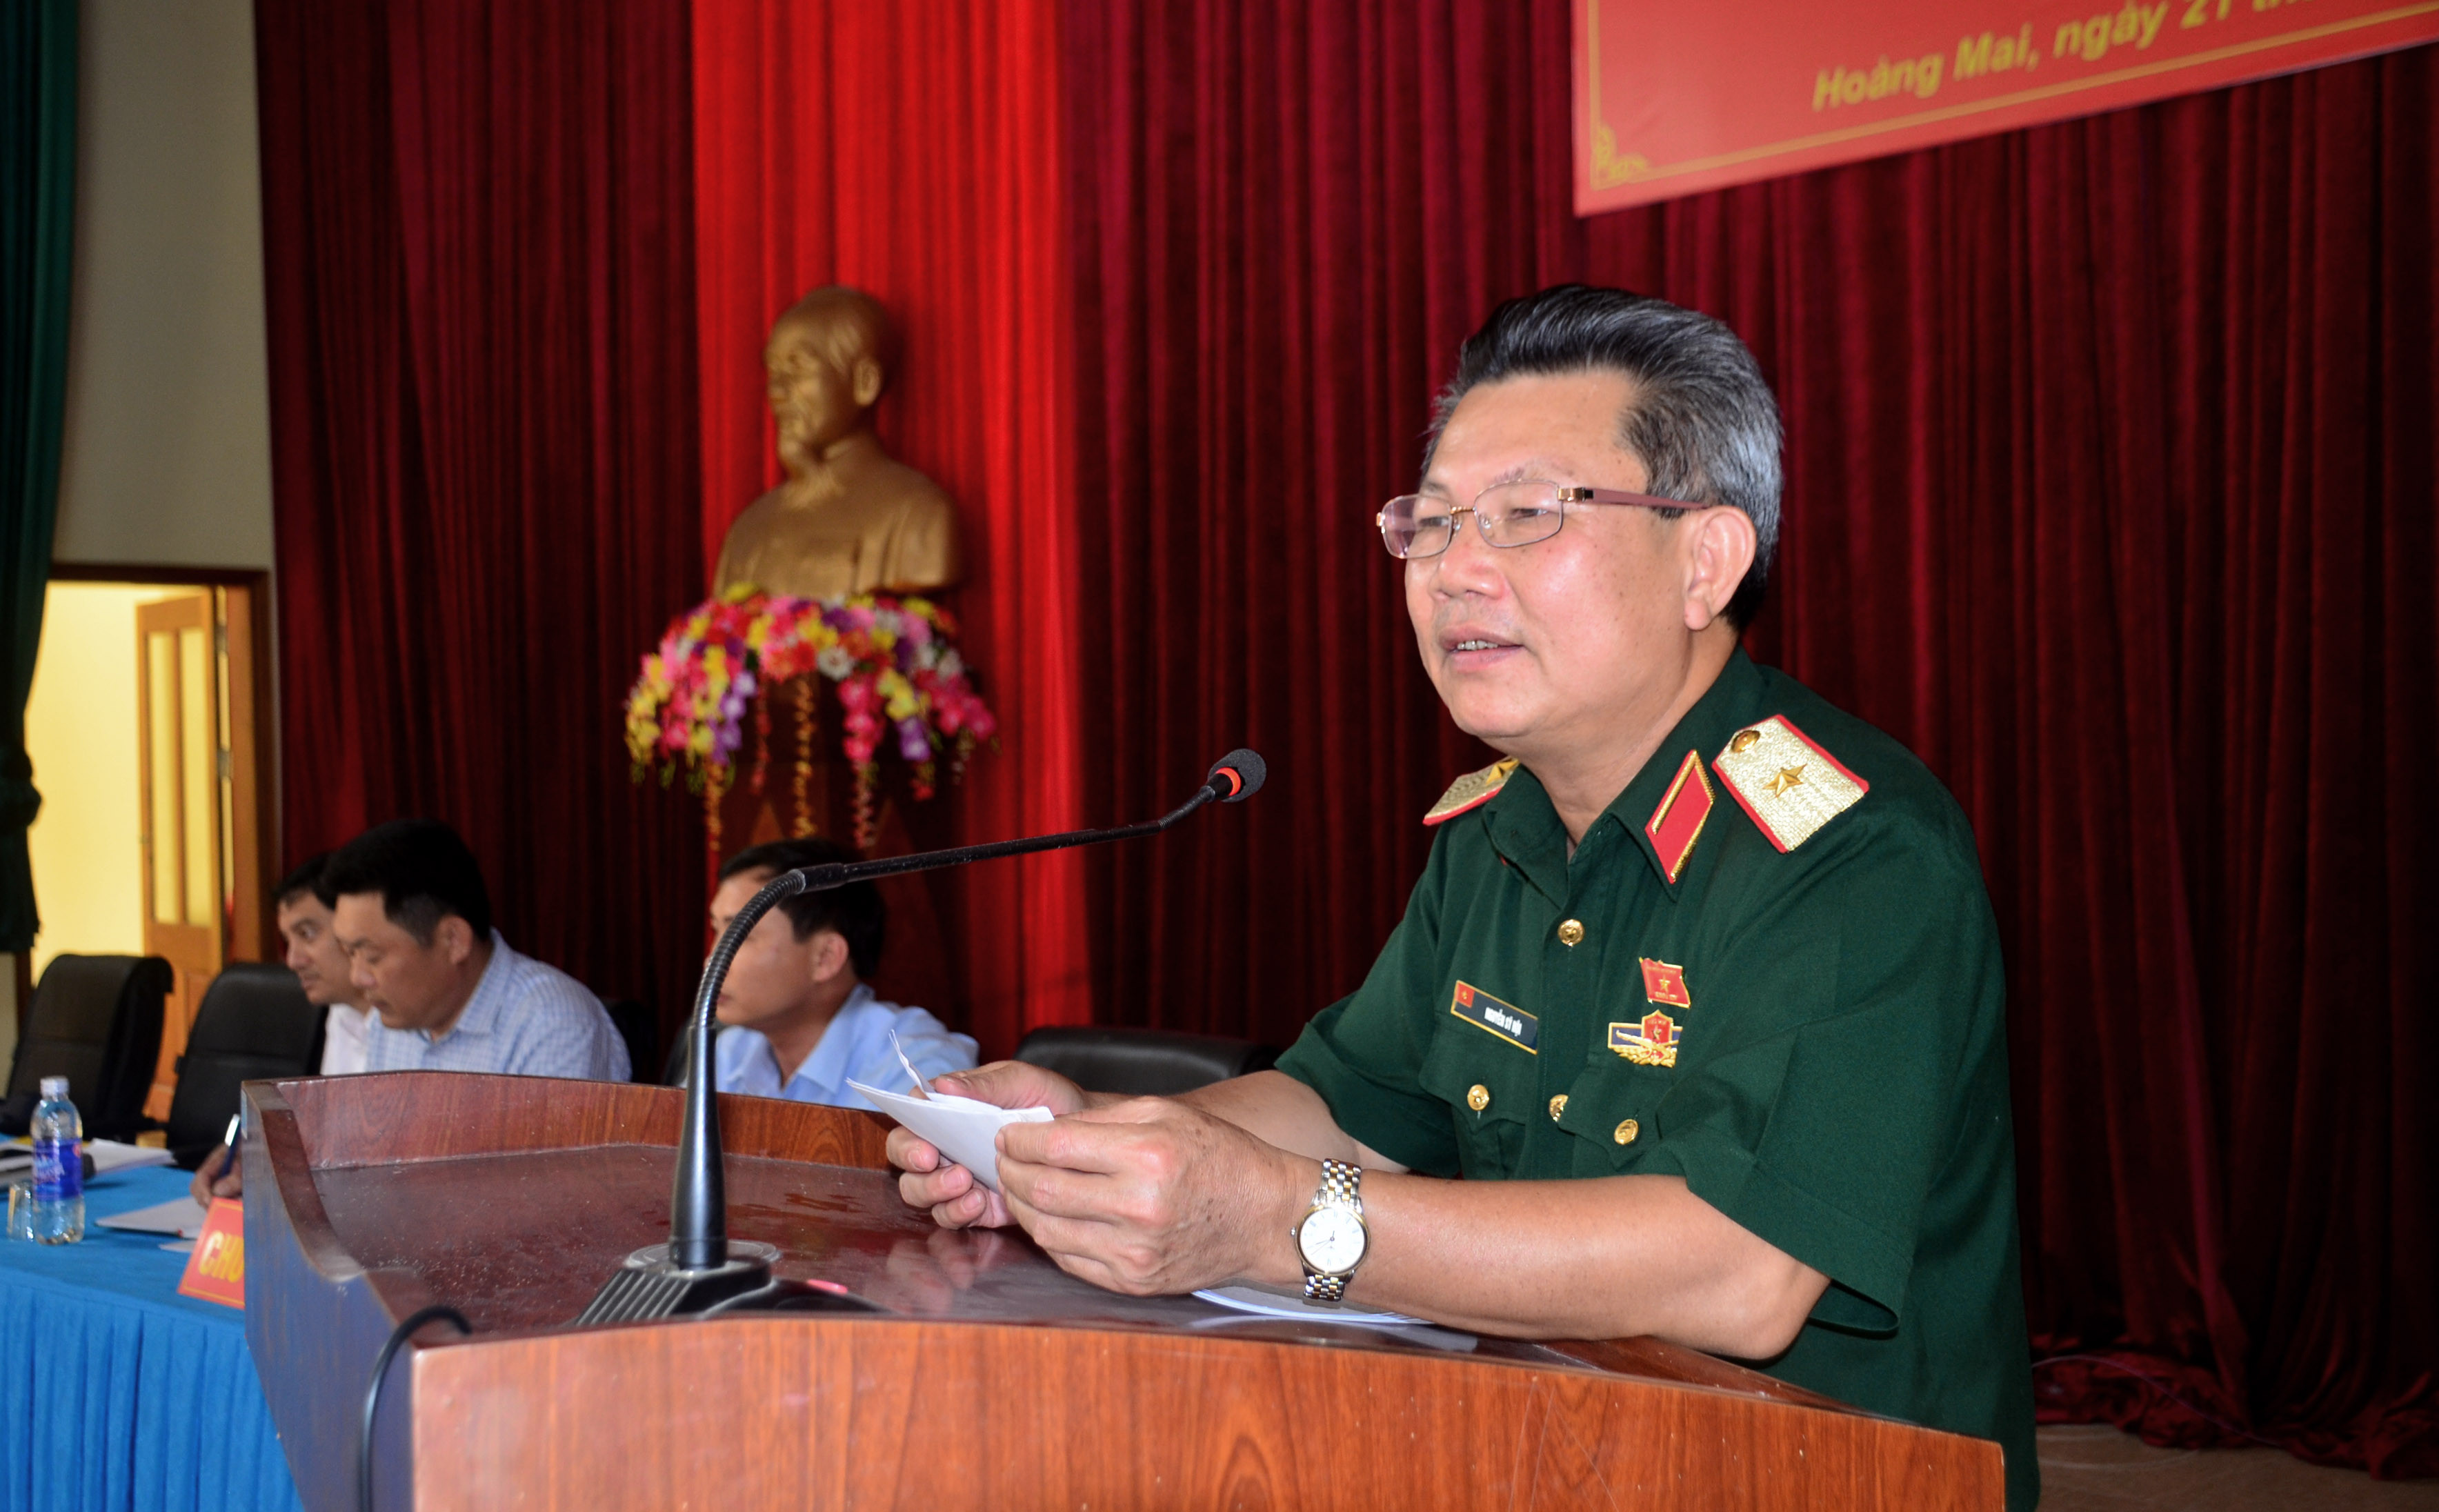 Thiếu tướng Nguyễn Sỹ Hội - Phó Tư lệnh Quân khu 4 thông báo kết quả kỳ họp thứ 5, Quốc hội khoa XIV đến cử tri. Ảnh: Thành Duy